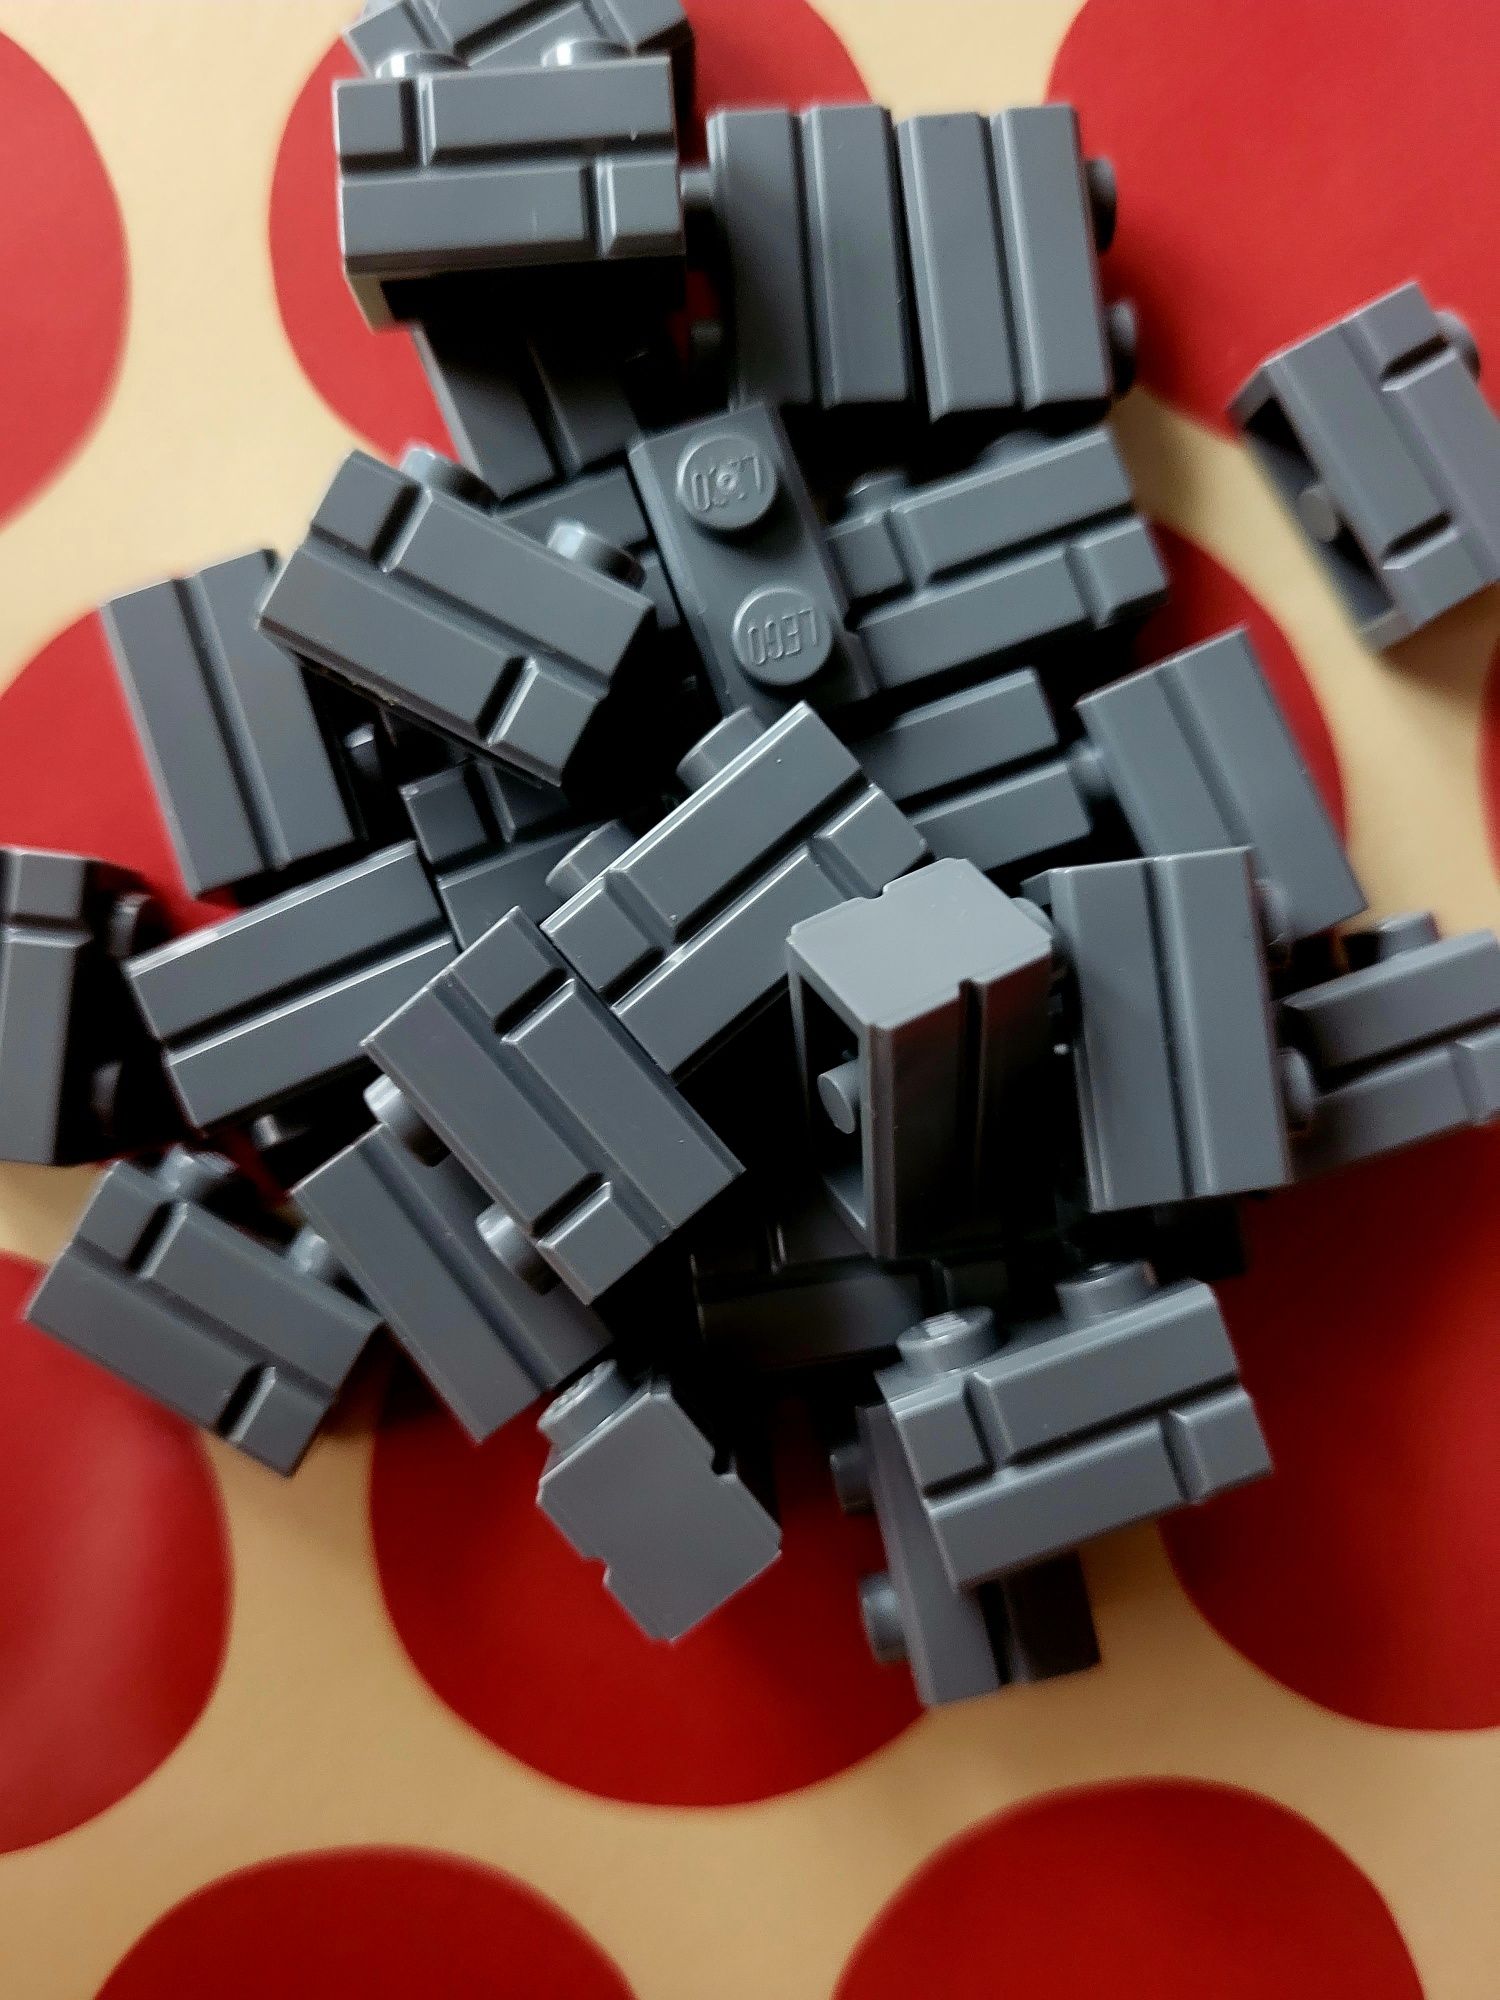 LEGO Cegiełki 100szt. Dark bluish gray (ciemno-szary)